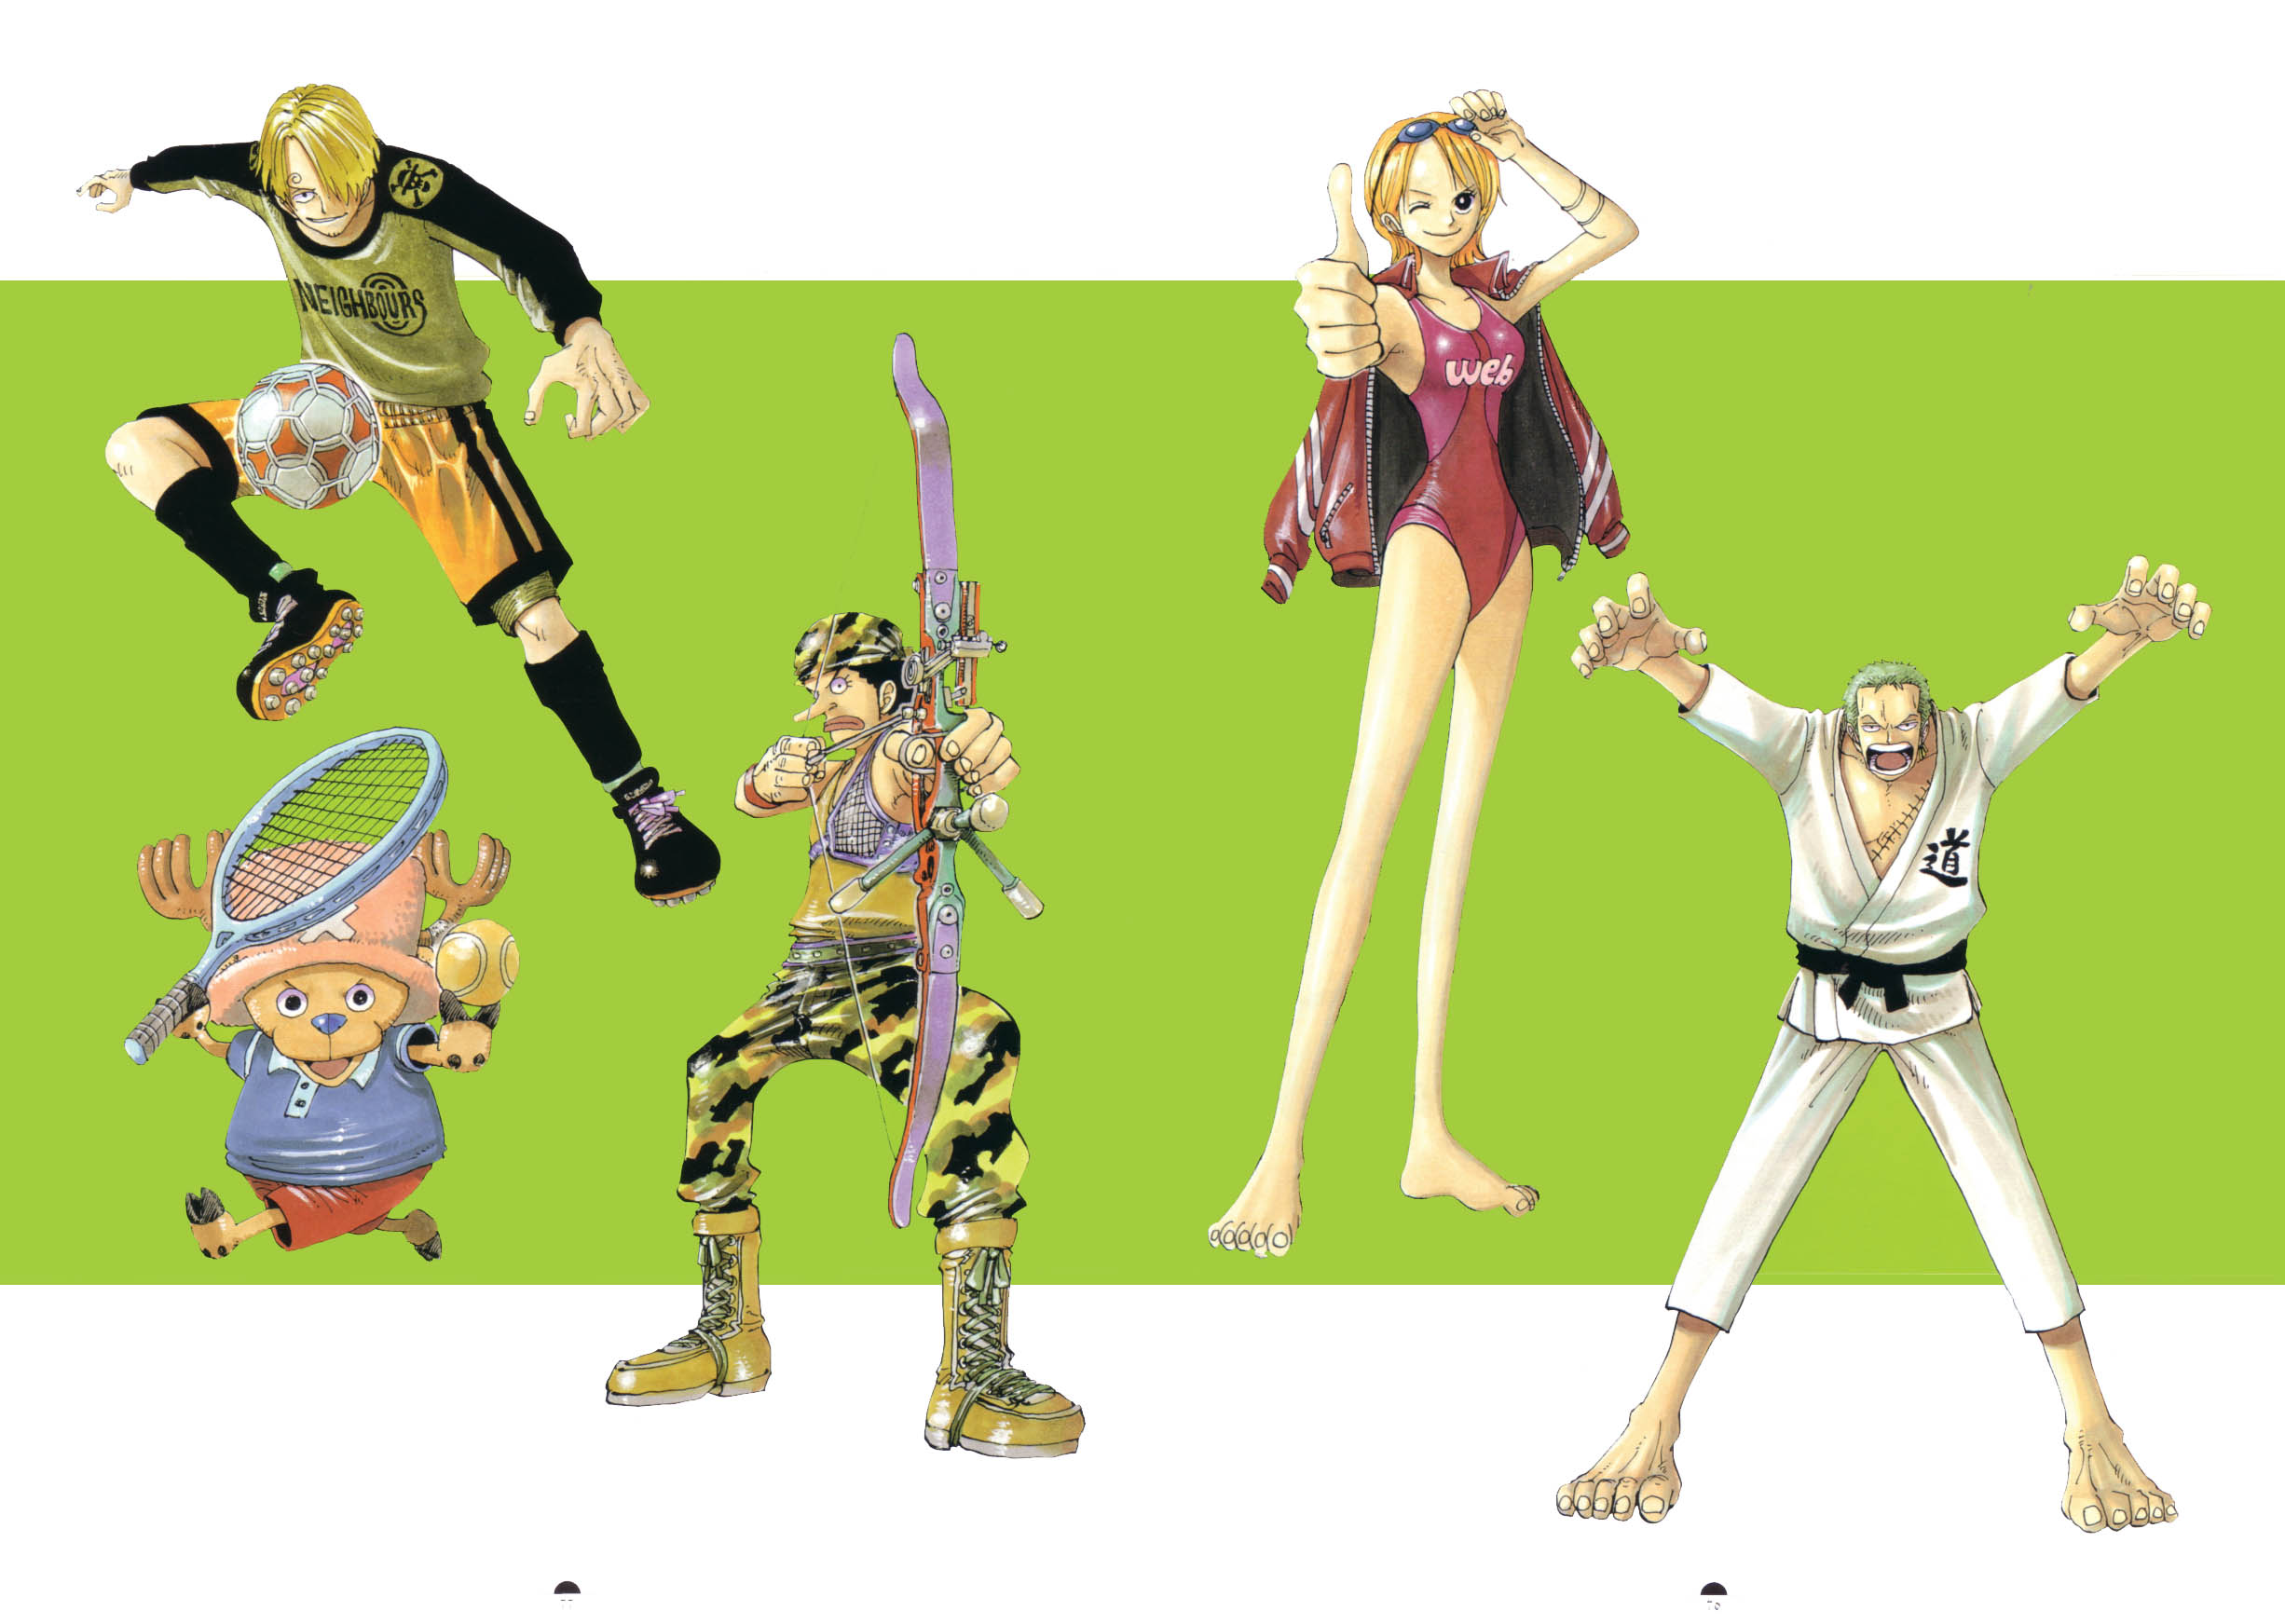 Free download wallpaper Anime, One Piece, Tony Tony Chopper, Usopp (One Piece), Roronoa Zoro, Nami (One Piece), Sanji (One Piece) on your PC desktop